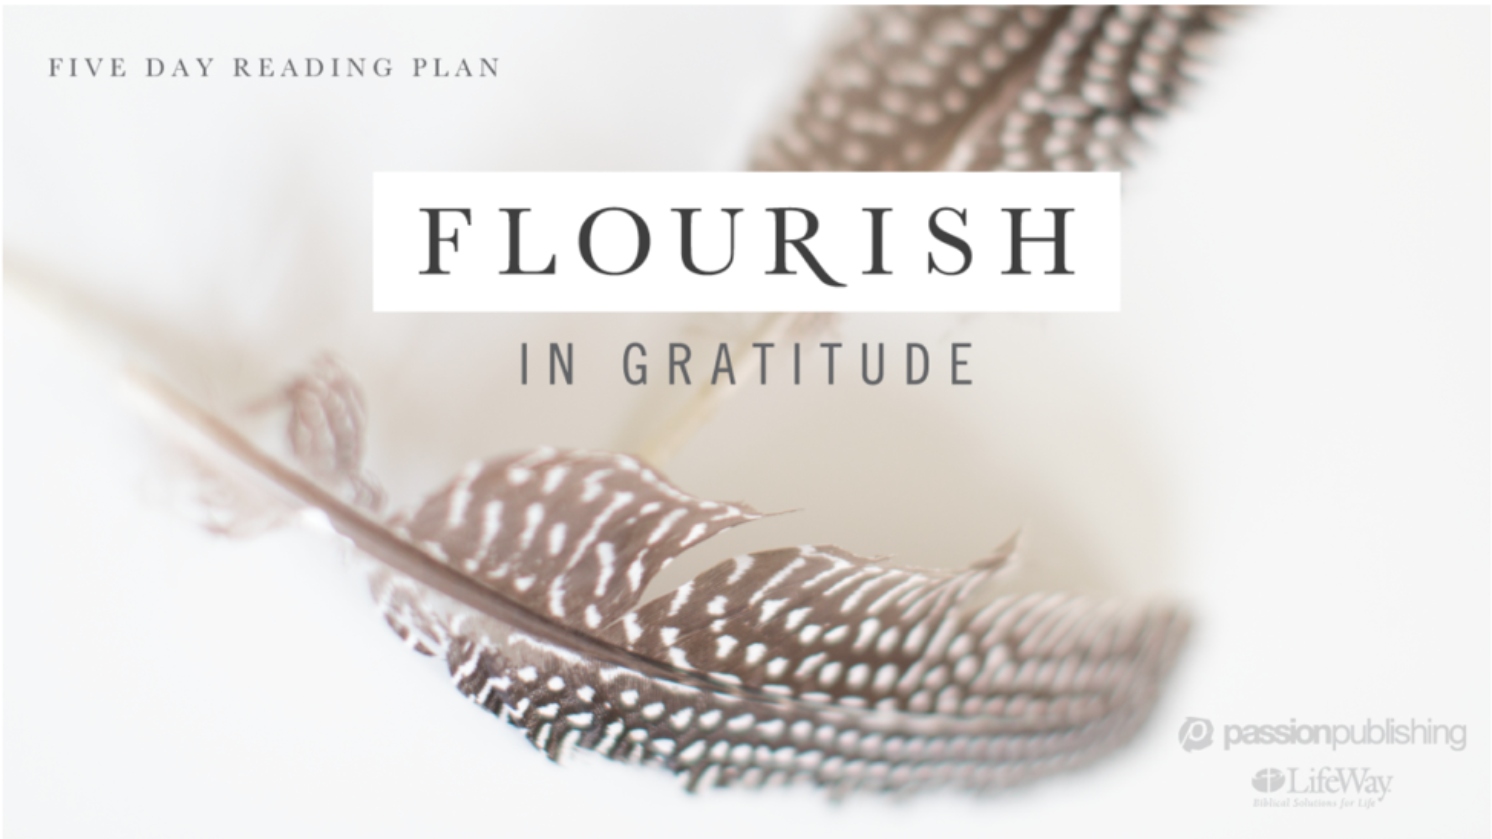 Flourish in Gratitude